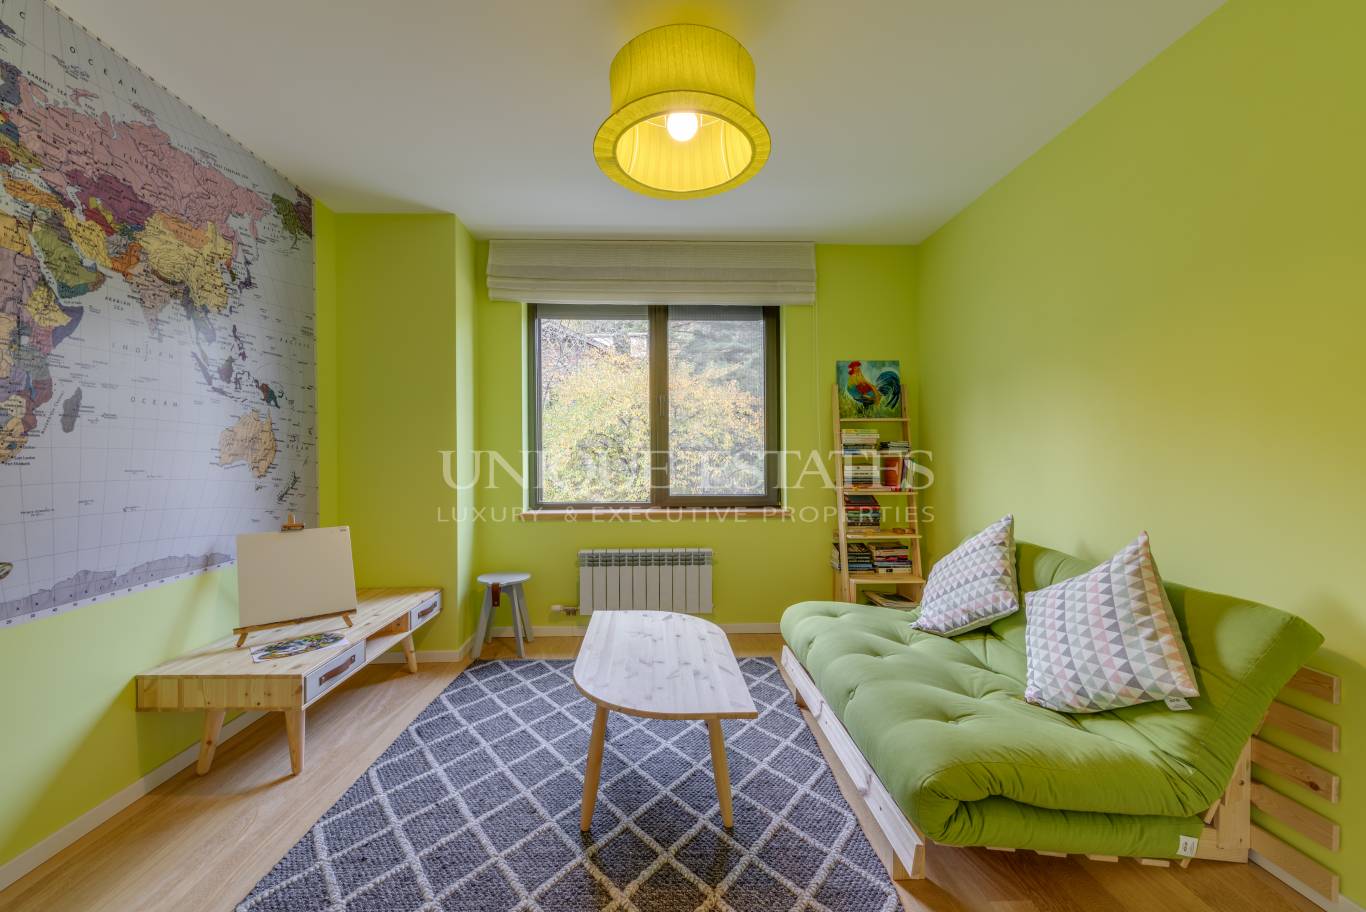 Апартамент под наем в София, Бояна - код на имота: N13774 - image 9